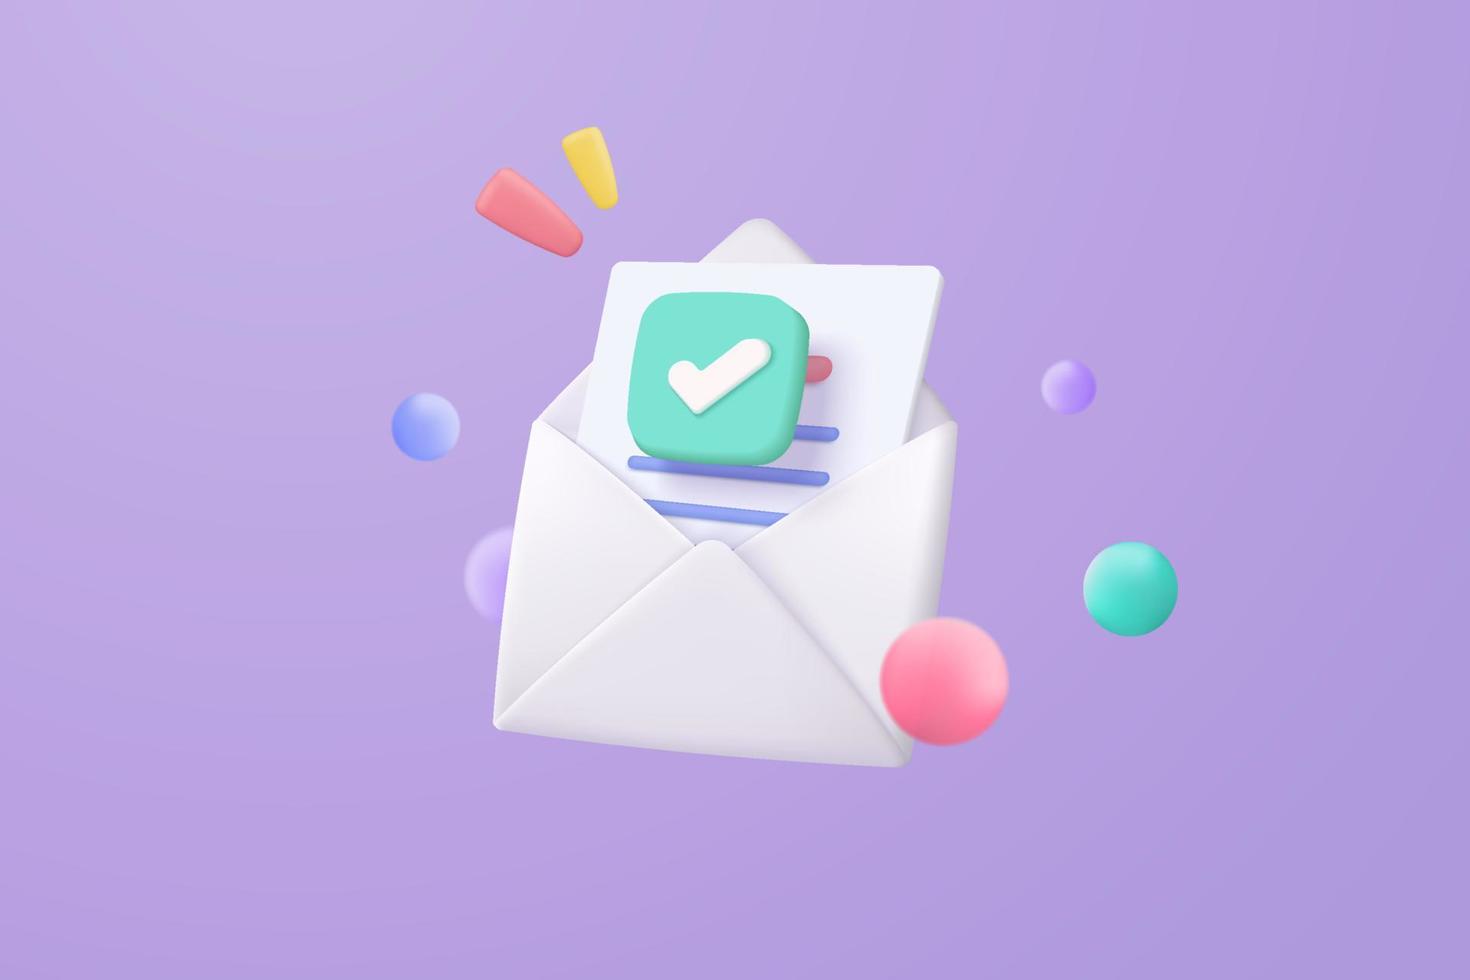 Icona della busta di posta 3d con notifica nuovo messaggio su sfondo viola. lettera e-mail minima con icona di lettura di carta da lettera. concetto di messaggio 3d rendering vettoriale isolato sfondo pastello